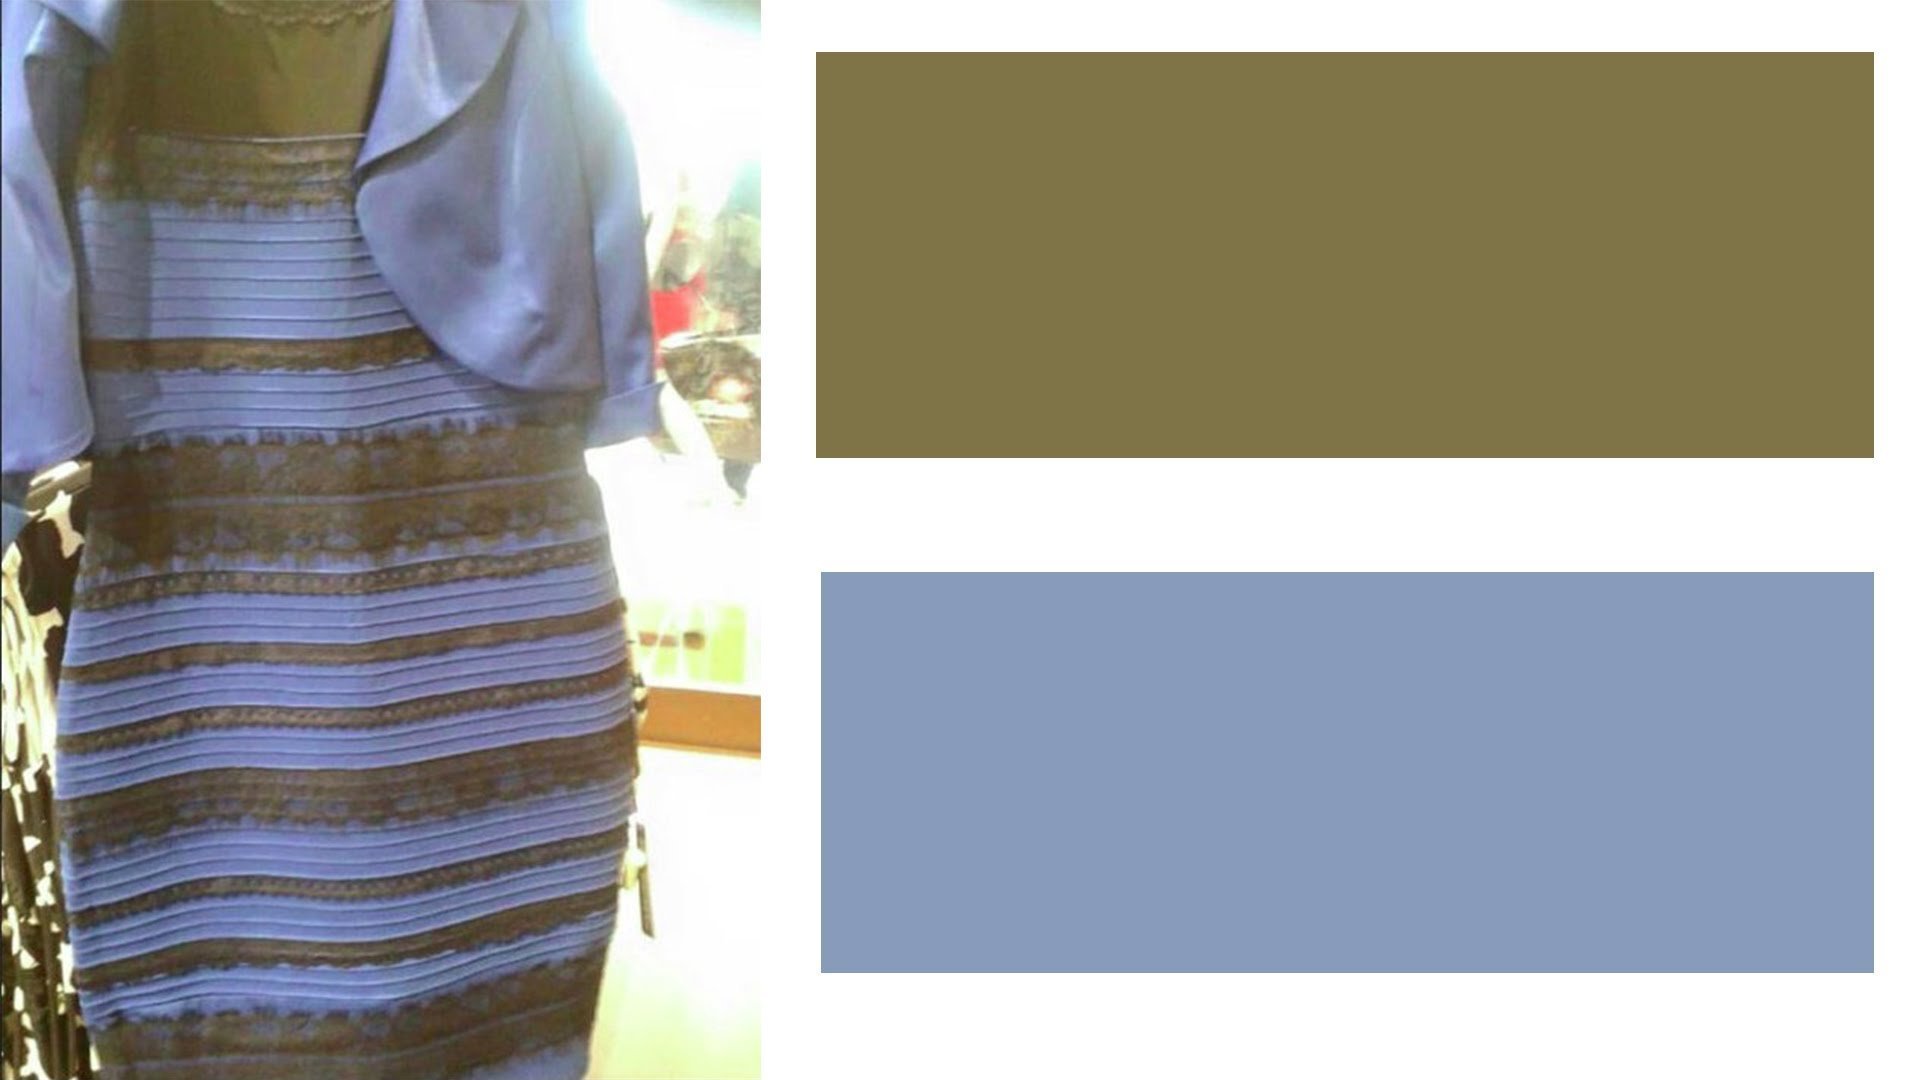 По разному или по разному. Платье бело-золотое или сине-черное оригинал. Платье обман зрения золотисто белое. Платье синее или золотое иллюзия. Платье хамелеон оптическая иллюзия.